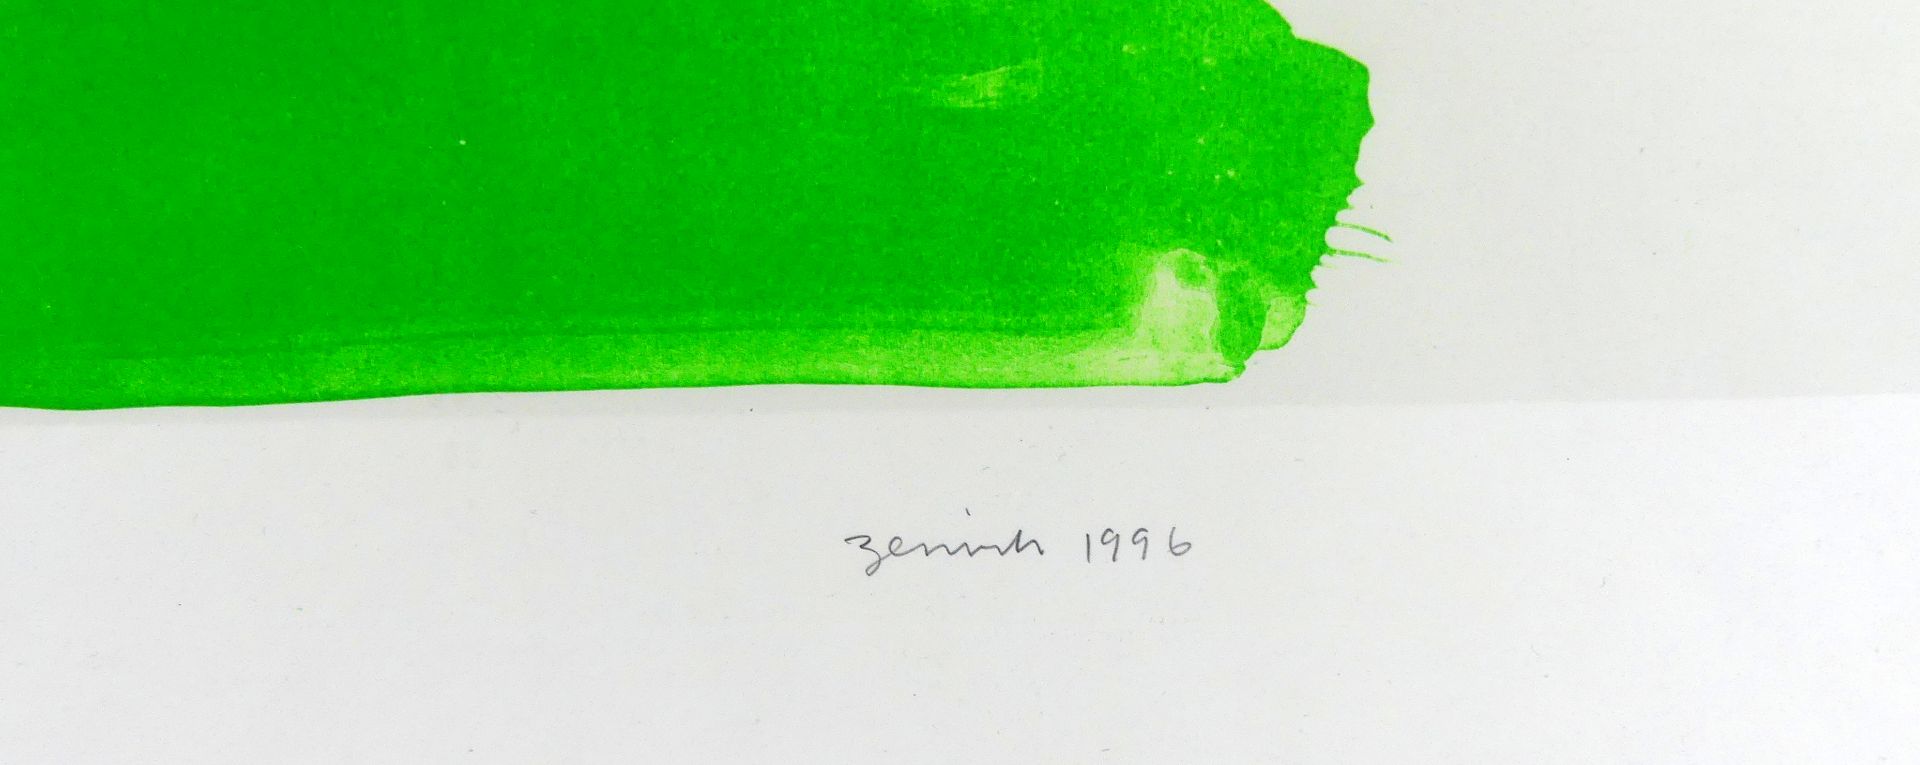 JERRY ZENIUK (1945), Farbserigraphie, unten rechts signiert, datiert 1996, - Image 2 of 2